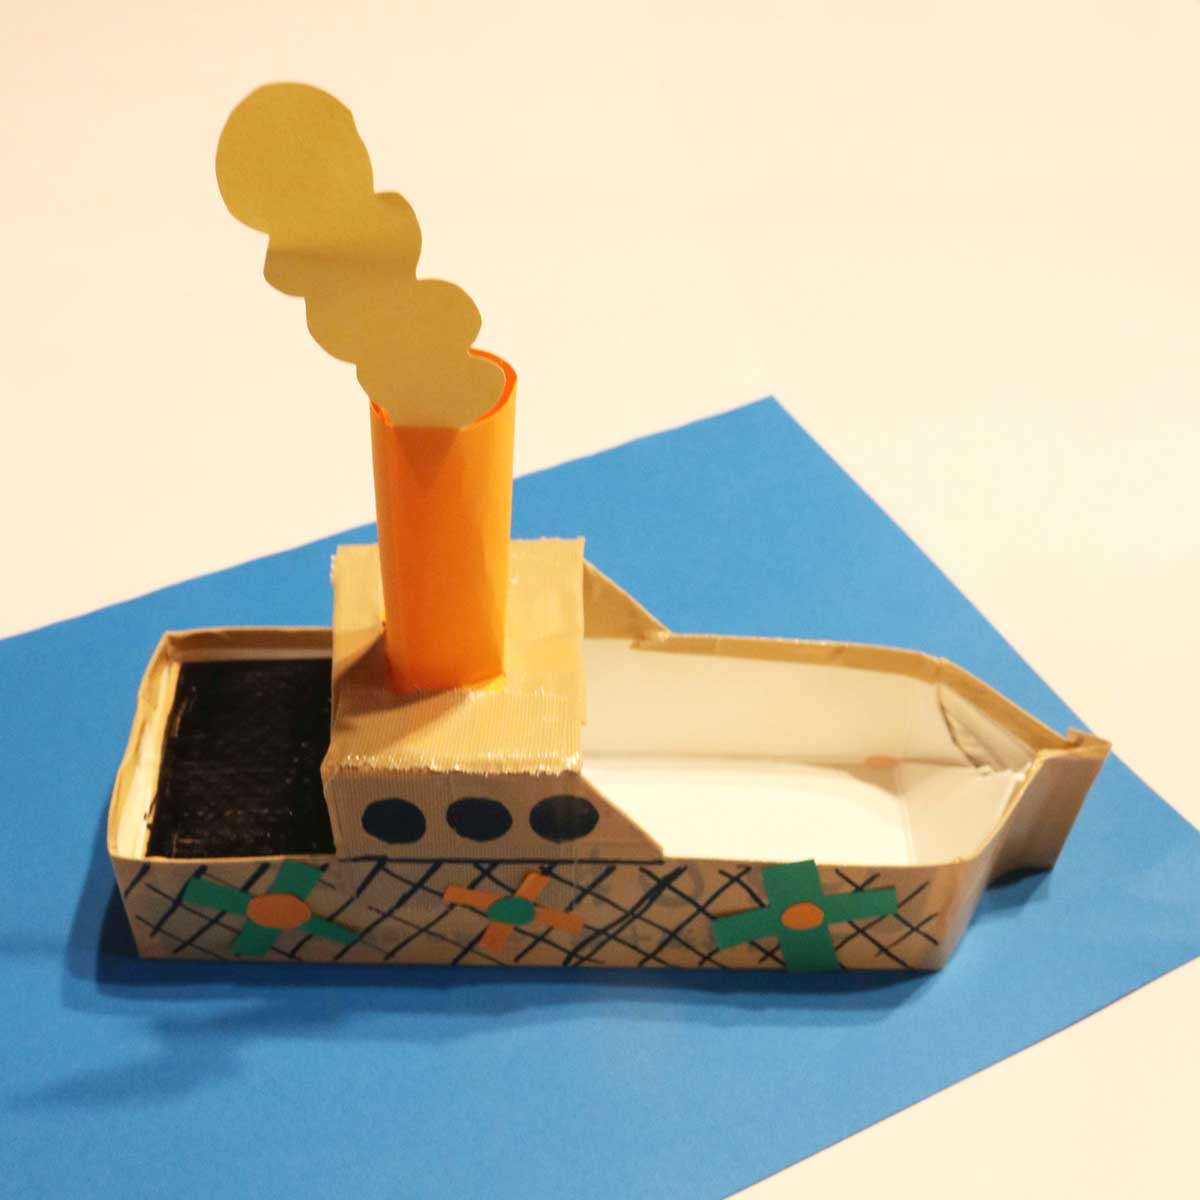 慶応幼稚舎向け小学校受験対策カリキュラム50分の参考作品「牛乳パックで速く進む船を作ろう」